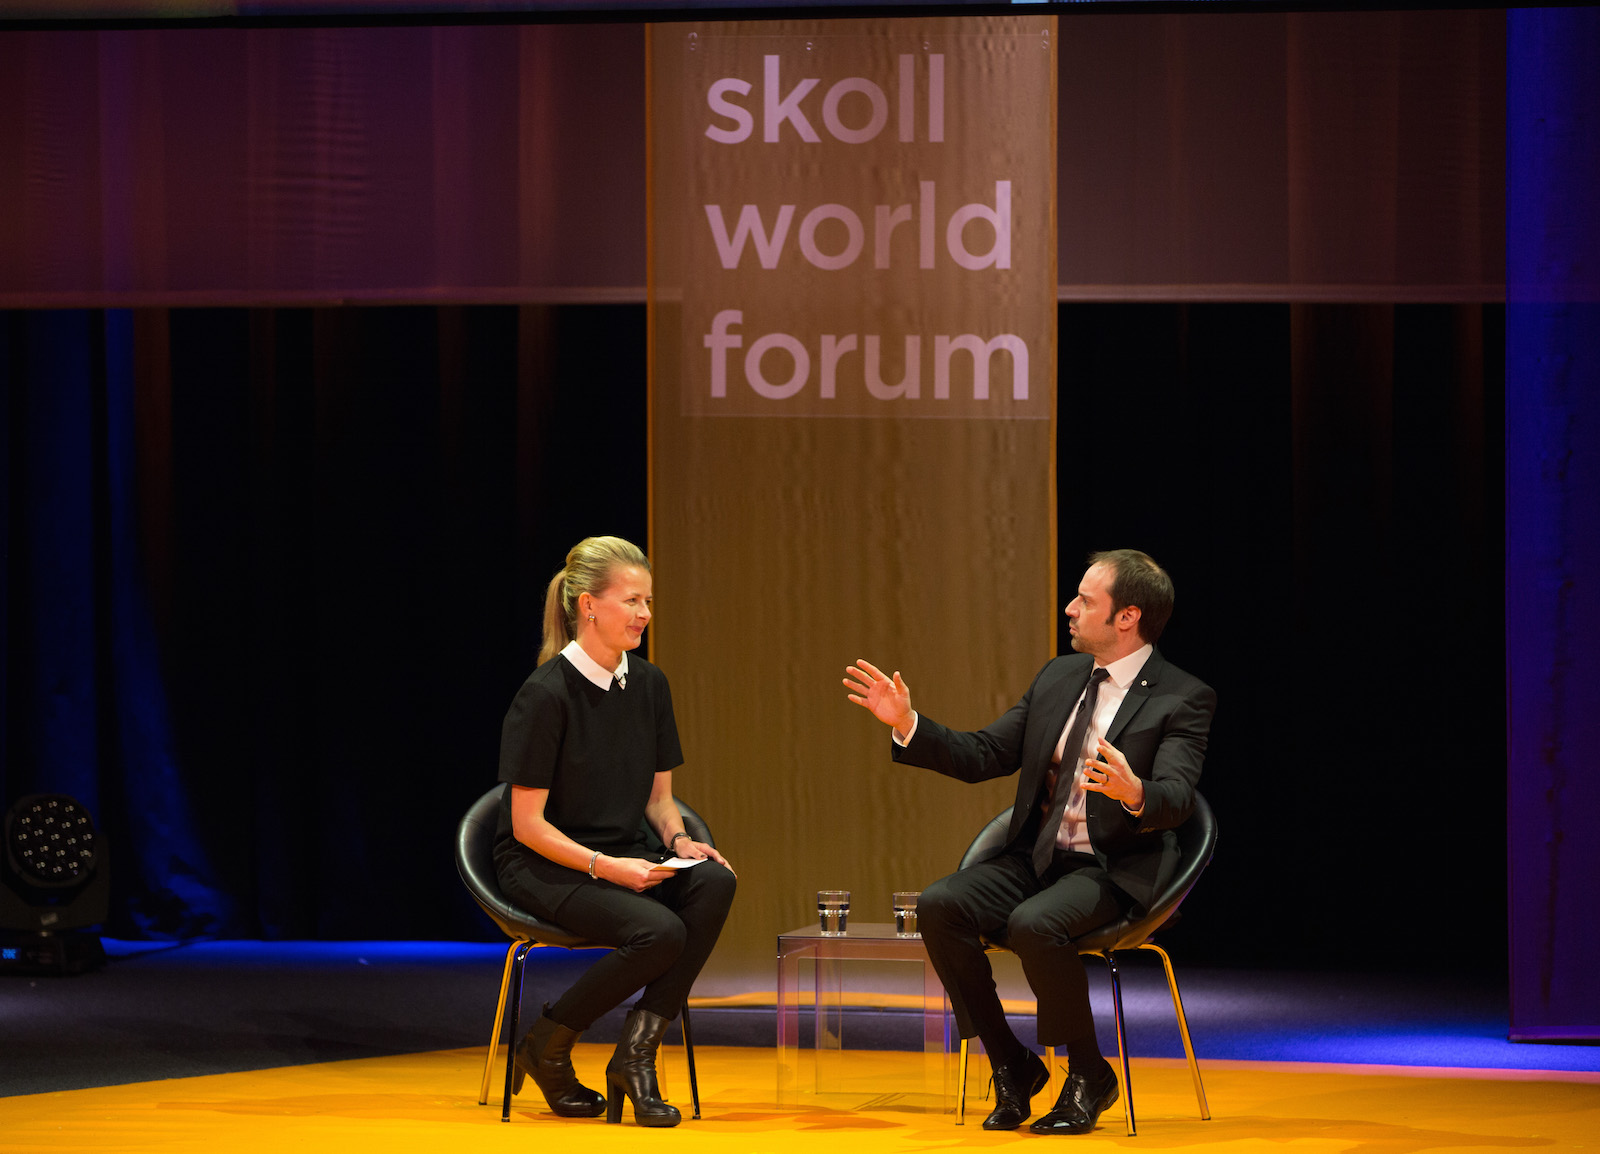 Skoll World Forum opening plenary